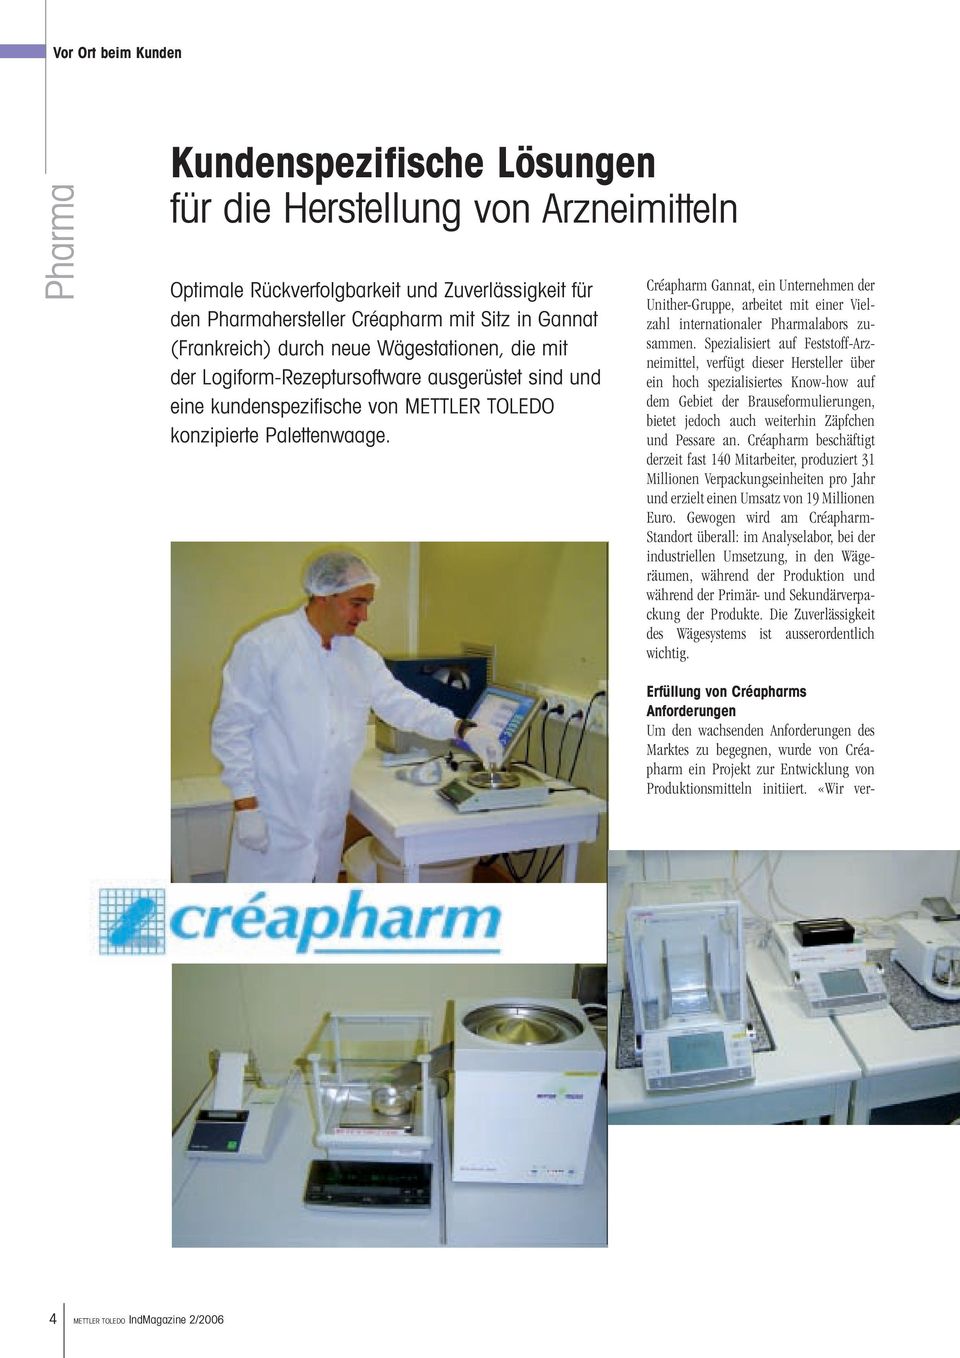 Créapharm Gannat, ein Unternehmen der Unither-Gruppe, arbeitet mit einer Vielzahl internationaler Pharmalabors zusammen.